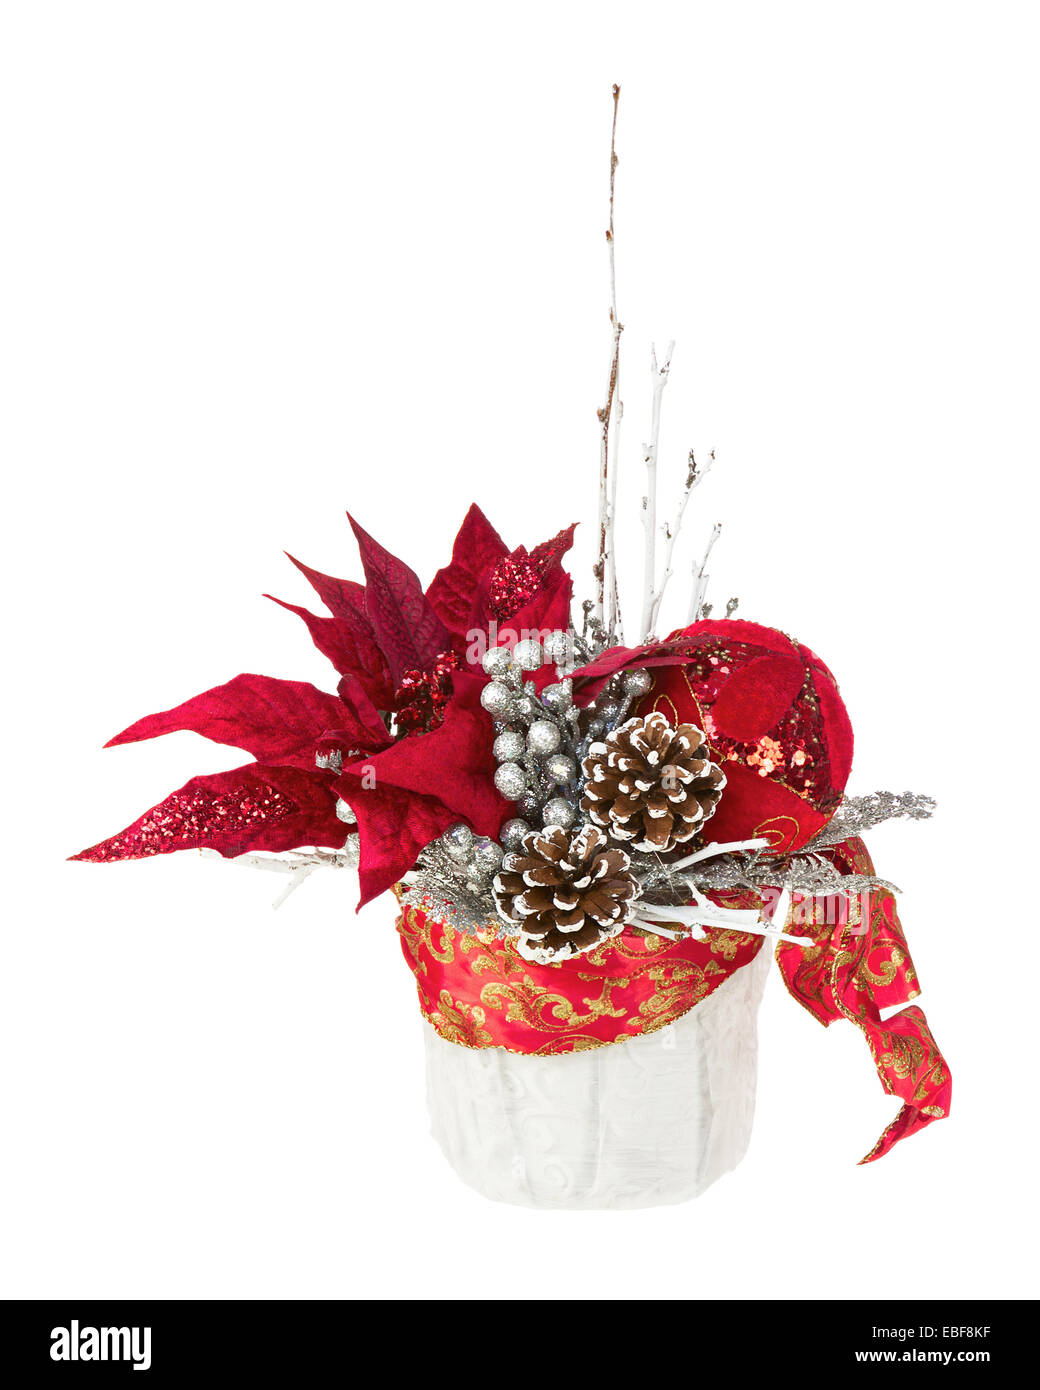 Composition de Noël étoile avec des branches, des pommes de pin, des rubans et des ballons en vase isolé sur fond blanc. Libre. Banque D'Images